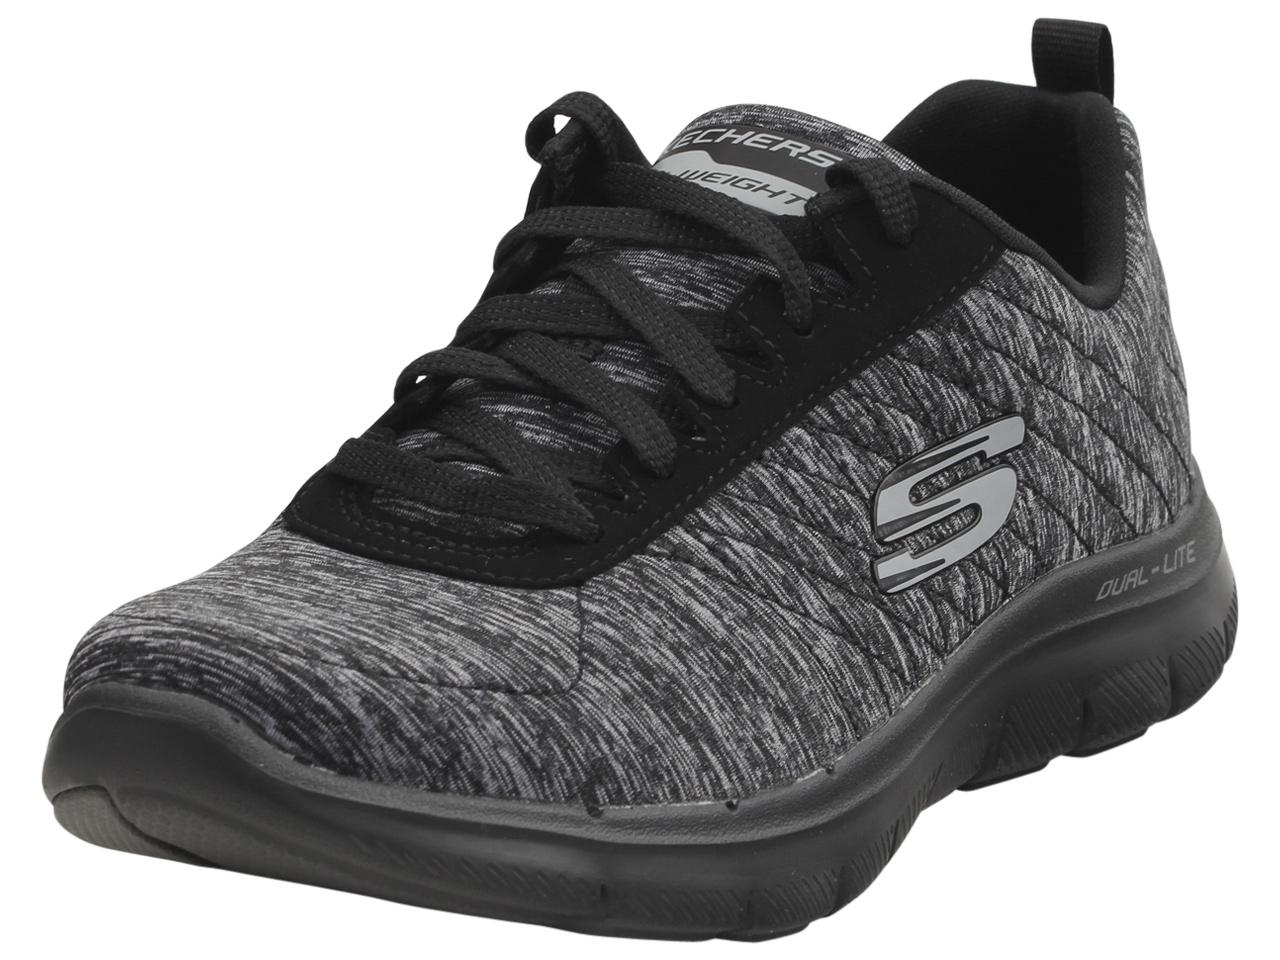 Skechers Women's Flex Appeal 2.0 Memory Foam Sneakers Shoes - Black - 8.5 B(M) US